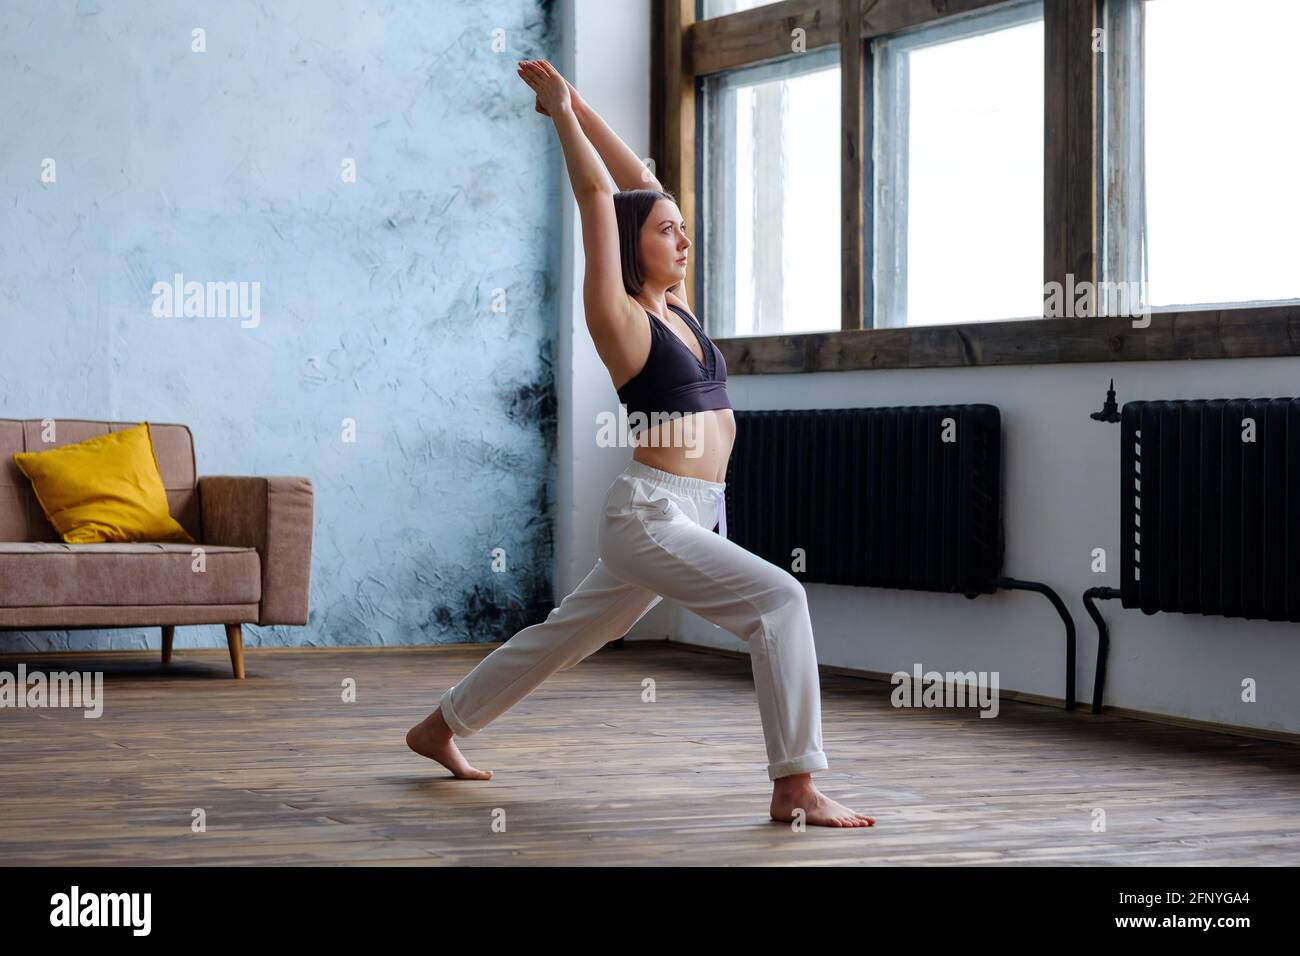 Frau in ihrem Wohnzimmer in Krieger-Yoga-Pose. Stockfoto